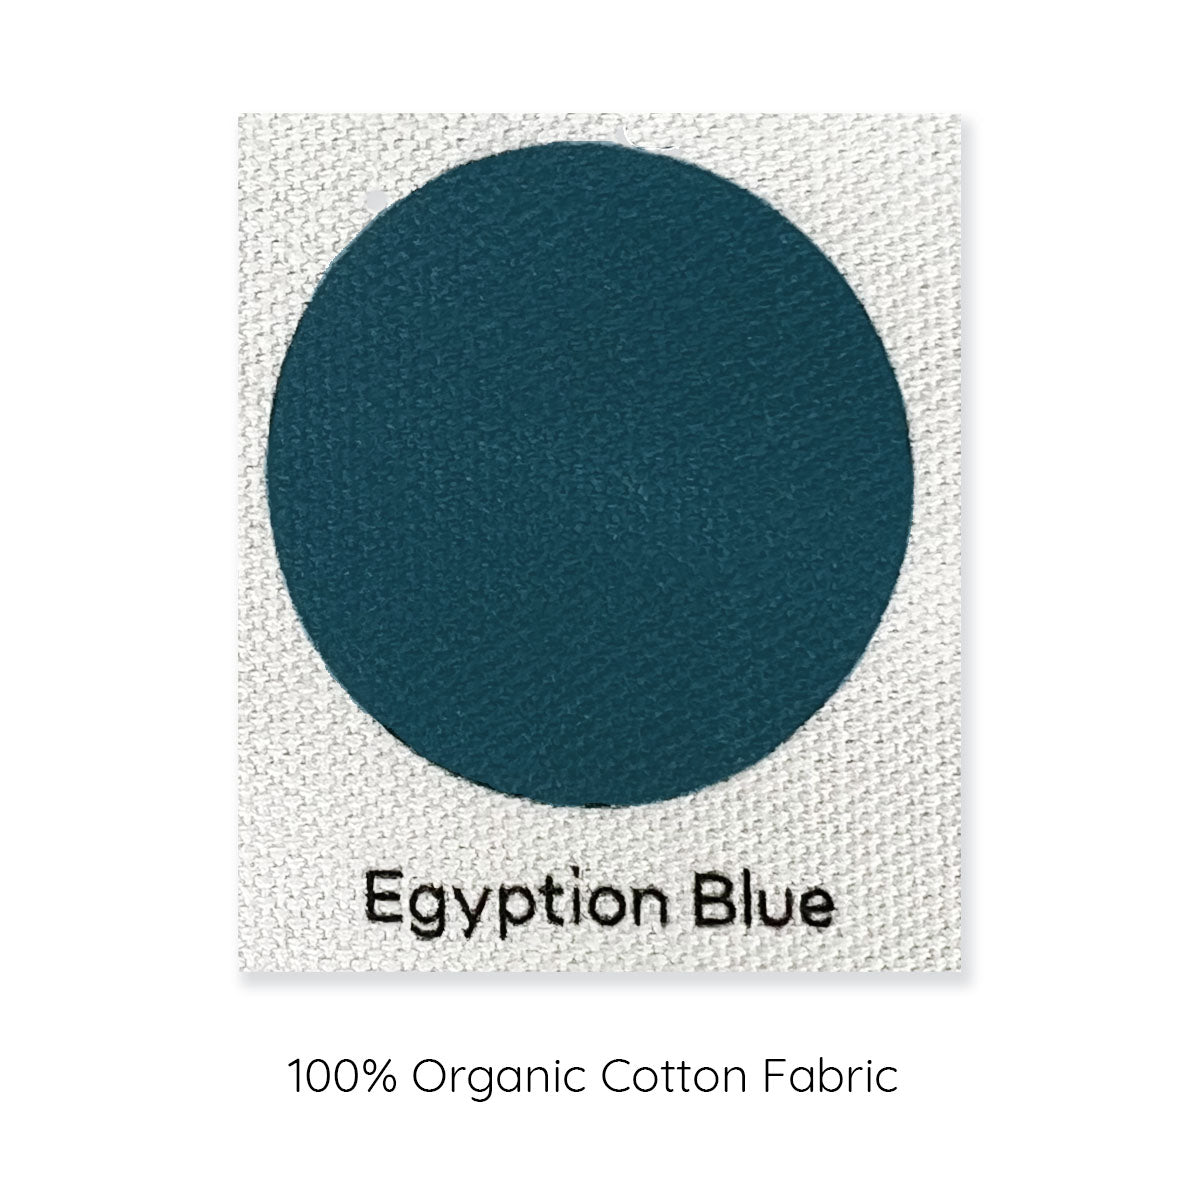 Egyptian blue 100% Egyptian blue sample.